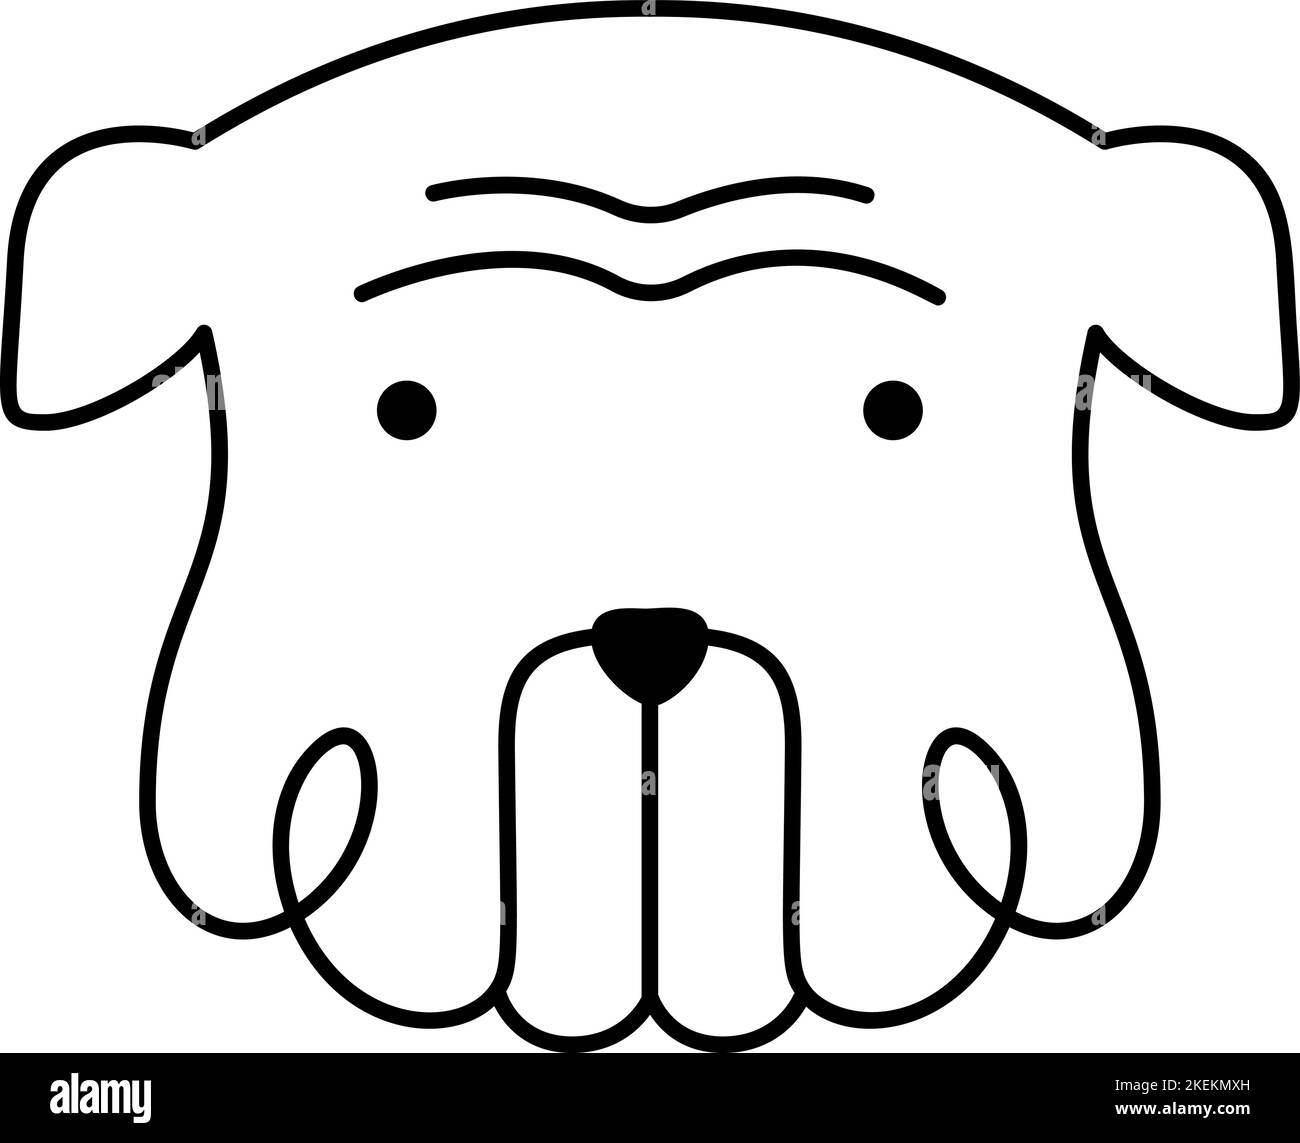 Vector niedlichen einzeiligen Hund Logo. Minimalistisches Haustier im abstrakten handgezeichneten Stil, minimalistische Einlinizeichnung. Schönes abstraktes Minimal Stock Vektor